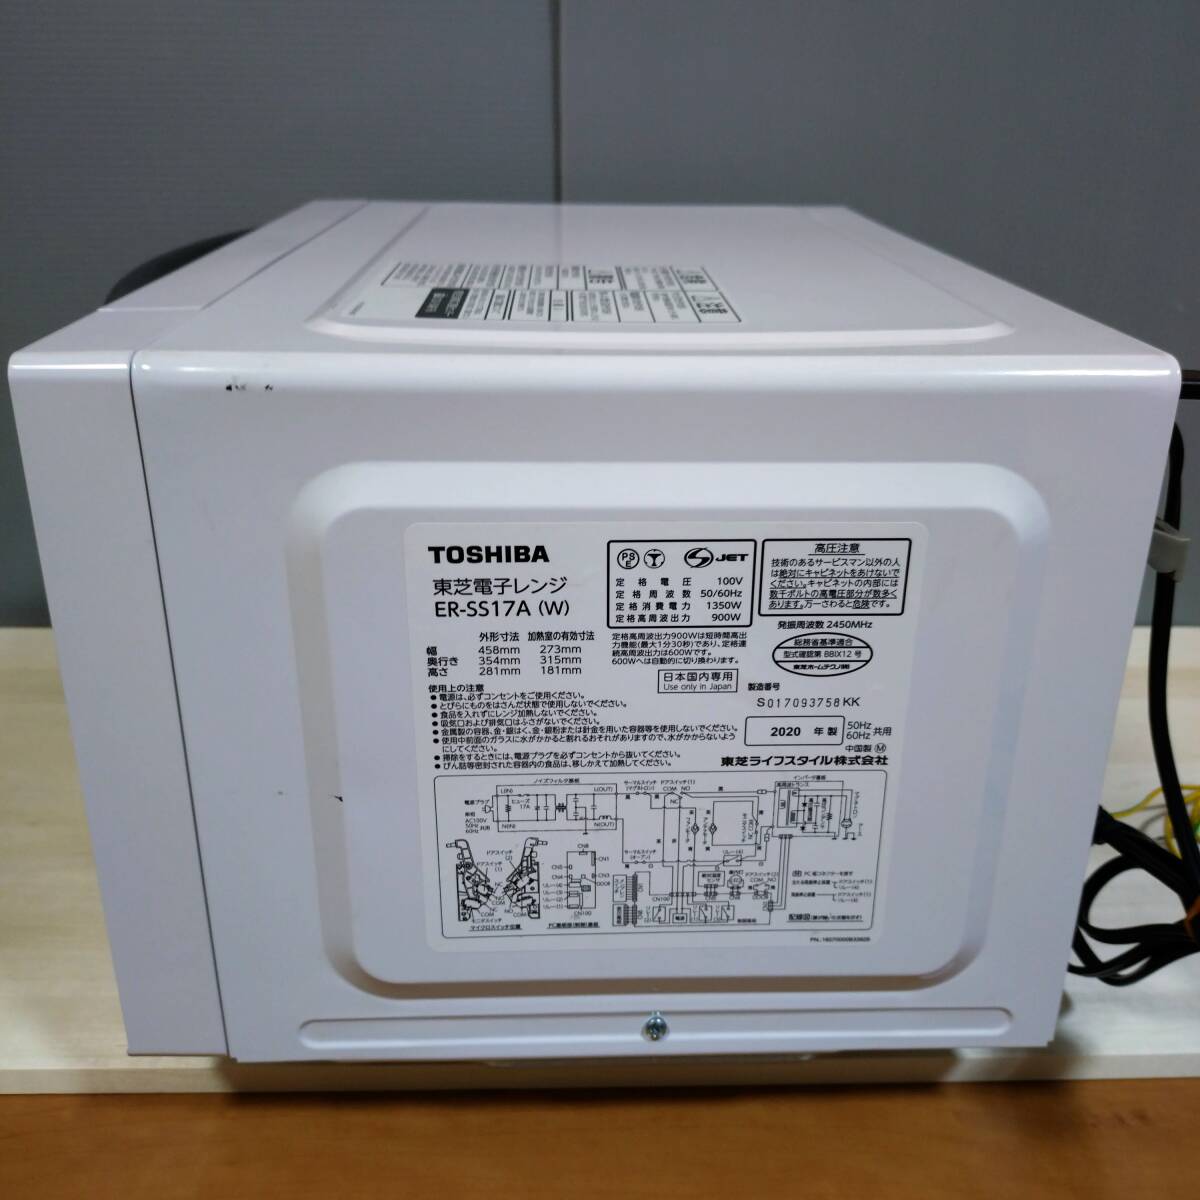 TOSHIBA Toshiba микроволновая печь ER-SS17A(W) 2020 год производства 